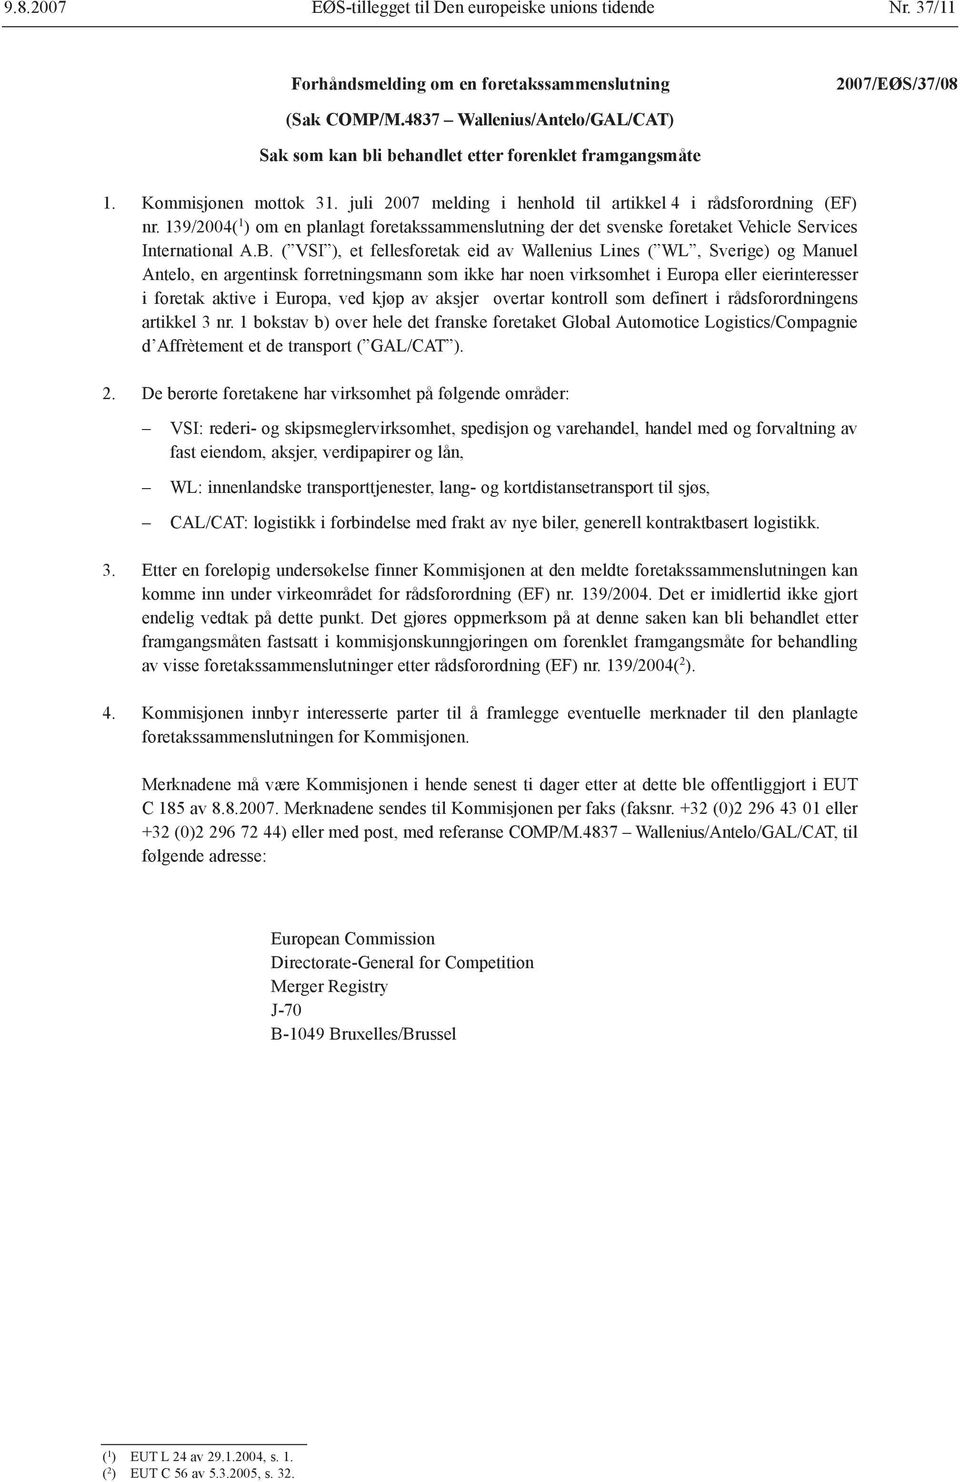 139/2004( 1 ) om en planlagt foretakssammenslutning der det svenske foretaket Vehicle Services International A.B.